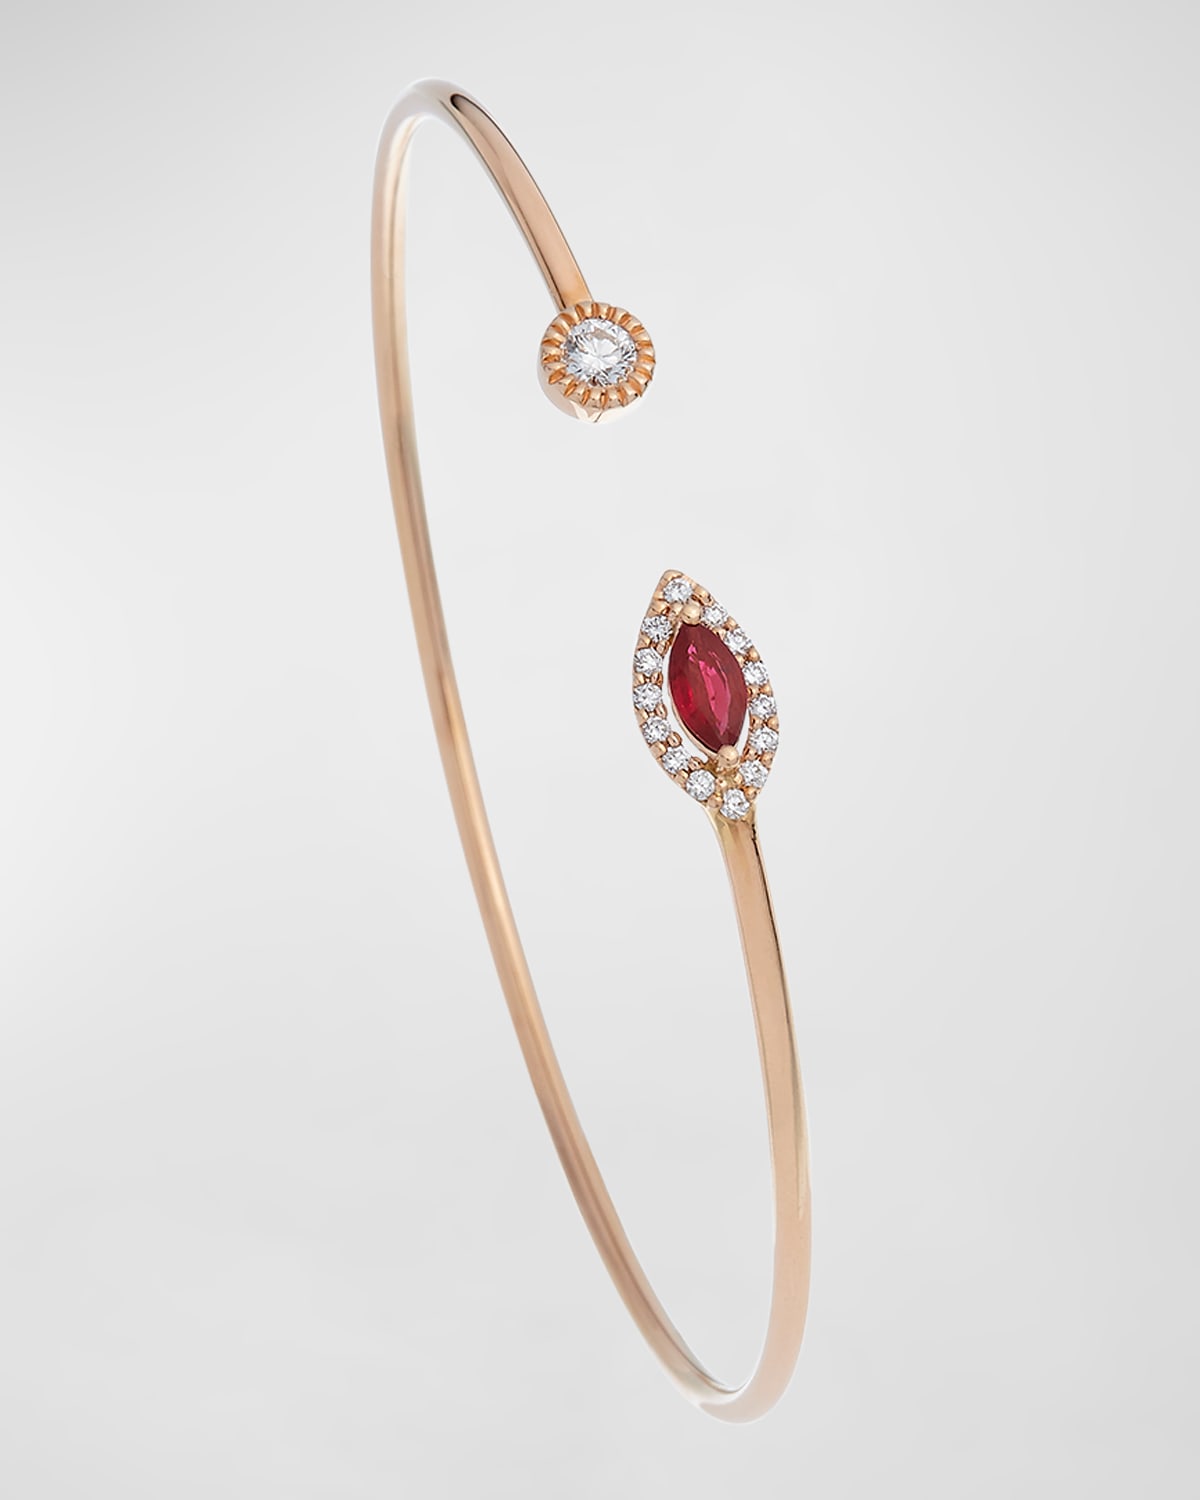 Positano 18k Rose Gold Diamond & Ruby Bracelet